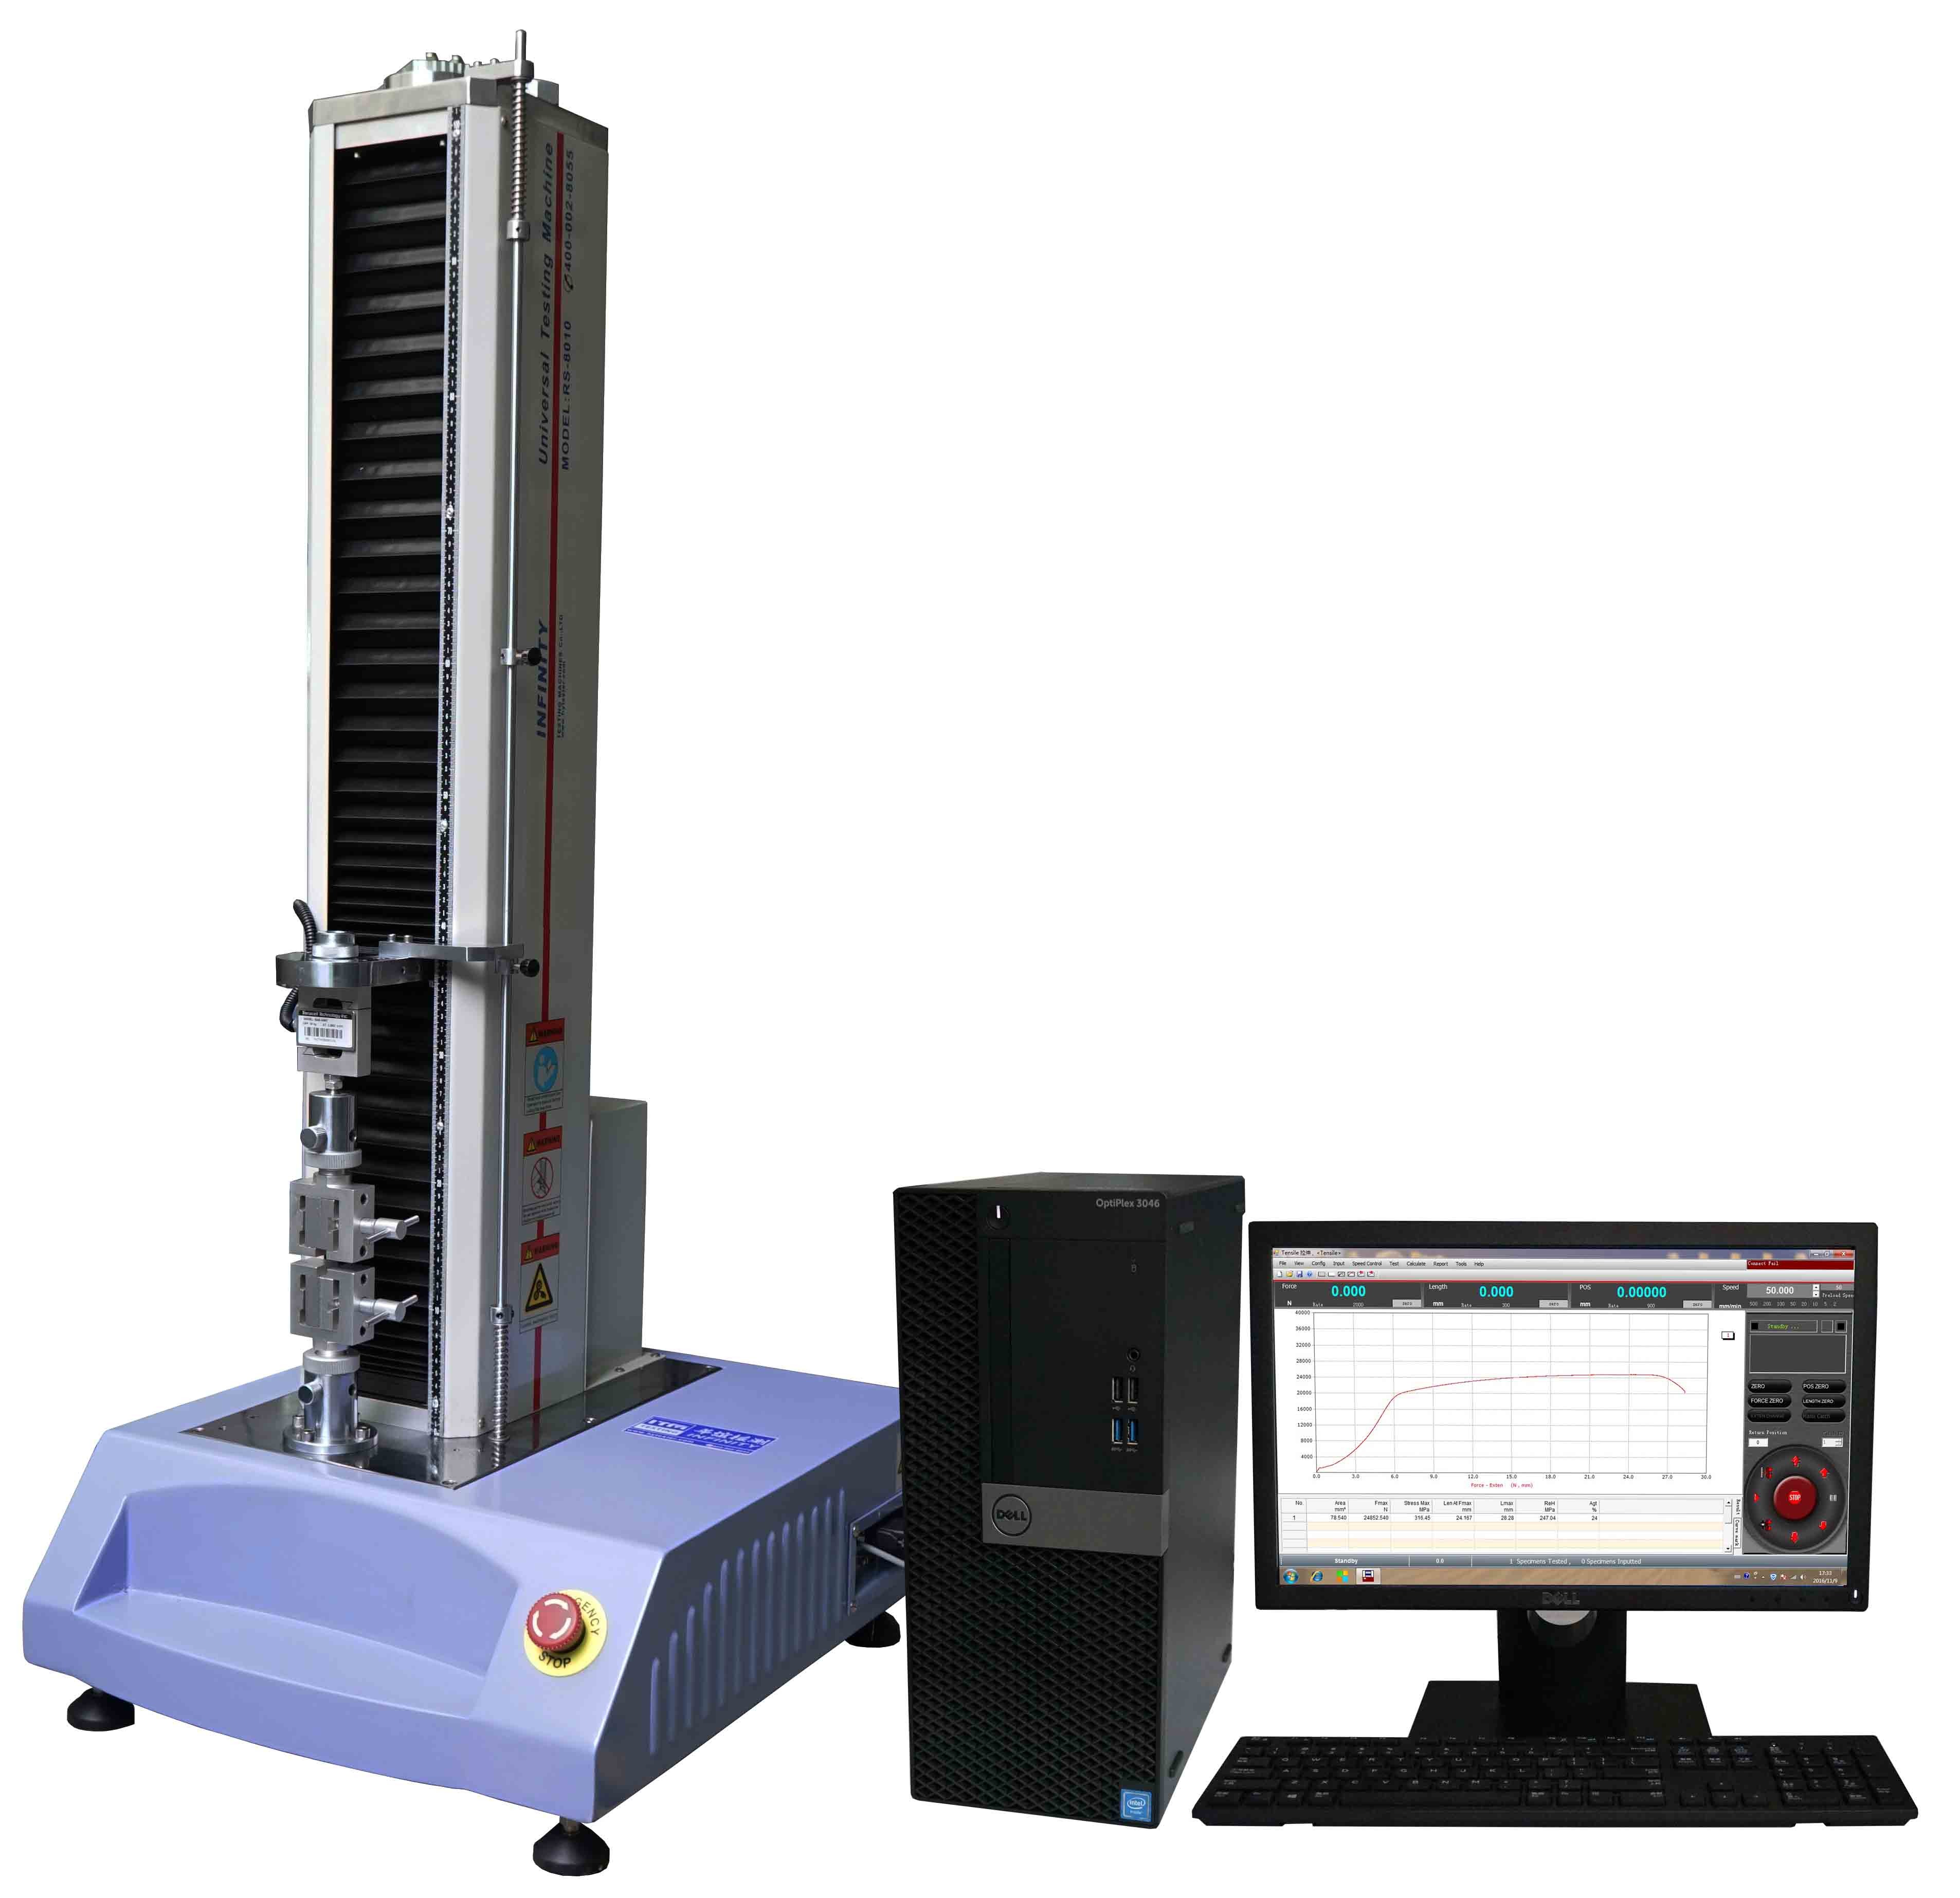 Capacidade universal eletrônica ASTM D3330 da máquina de testes 5KN do servocontrol